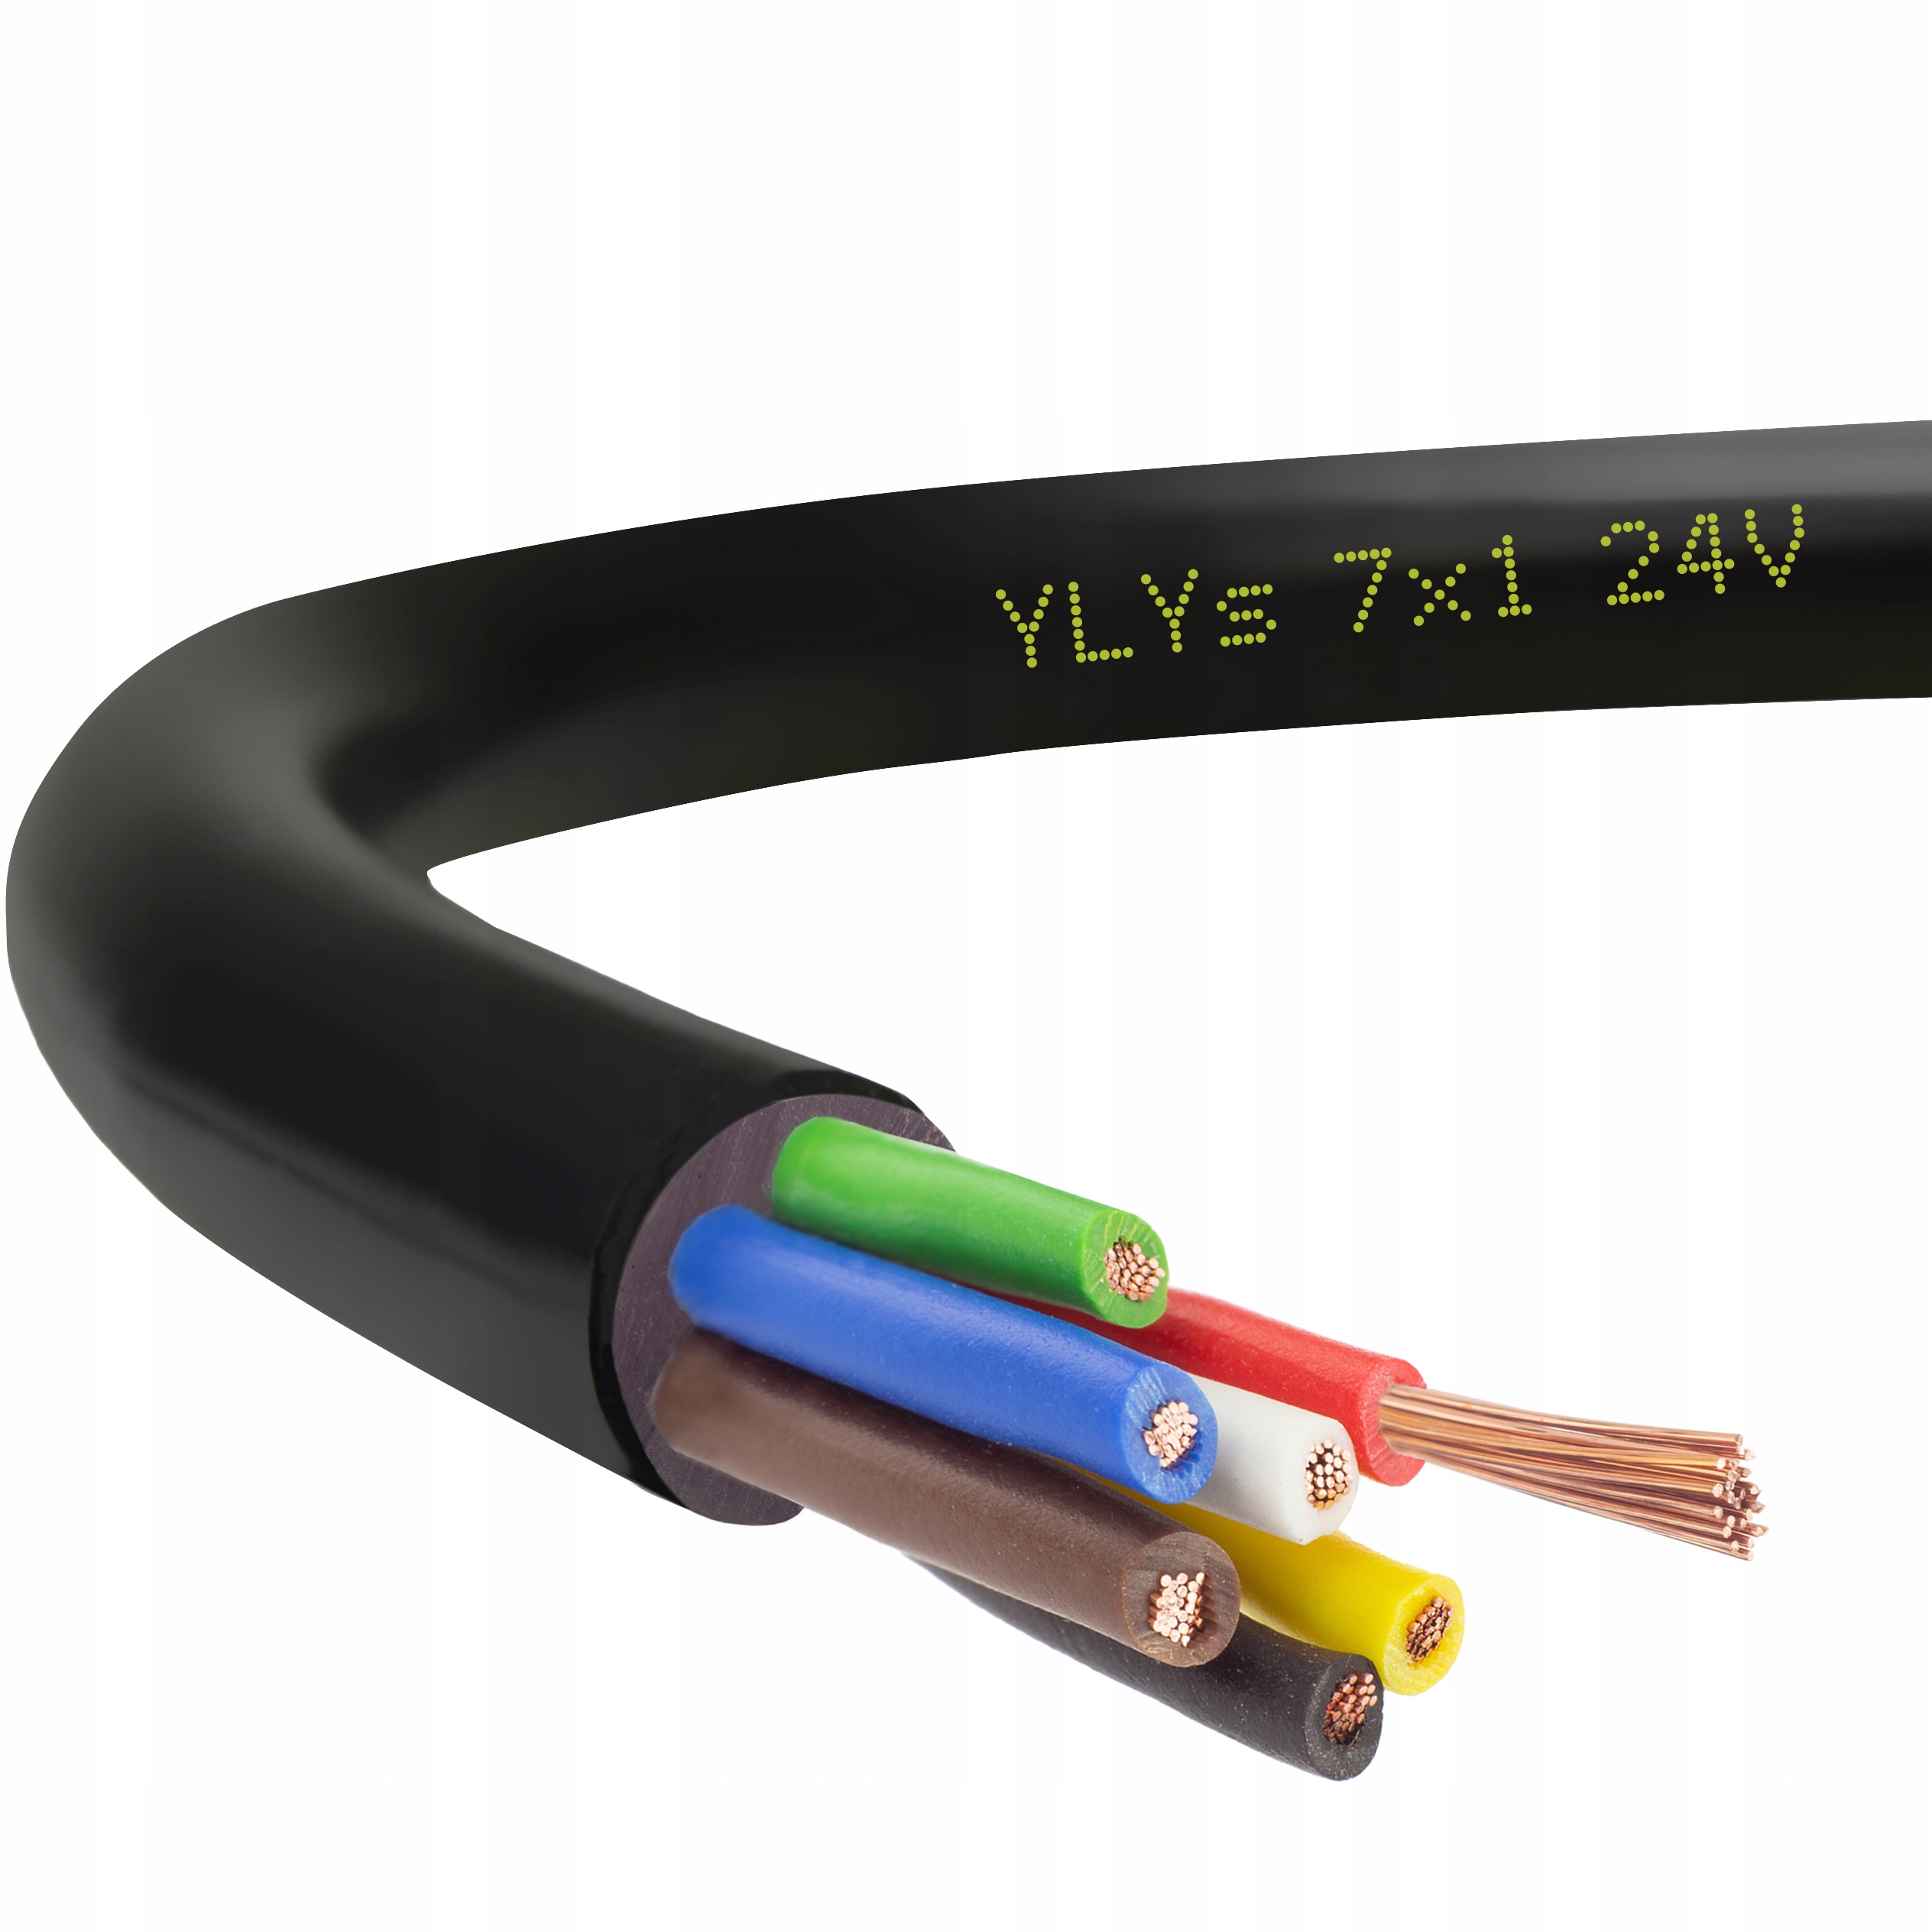 75 0.7. Кабель автомобильный 7х0.75. Кабель 7-жильный кабель YLYS 6x1мм. Кабельный кабель 7 Life Vein YLYS 6x1 + 1,5 мм. Кабель кабель 7 жильный кабель жил YLYS 6x1 + 1,5 мм.